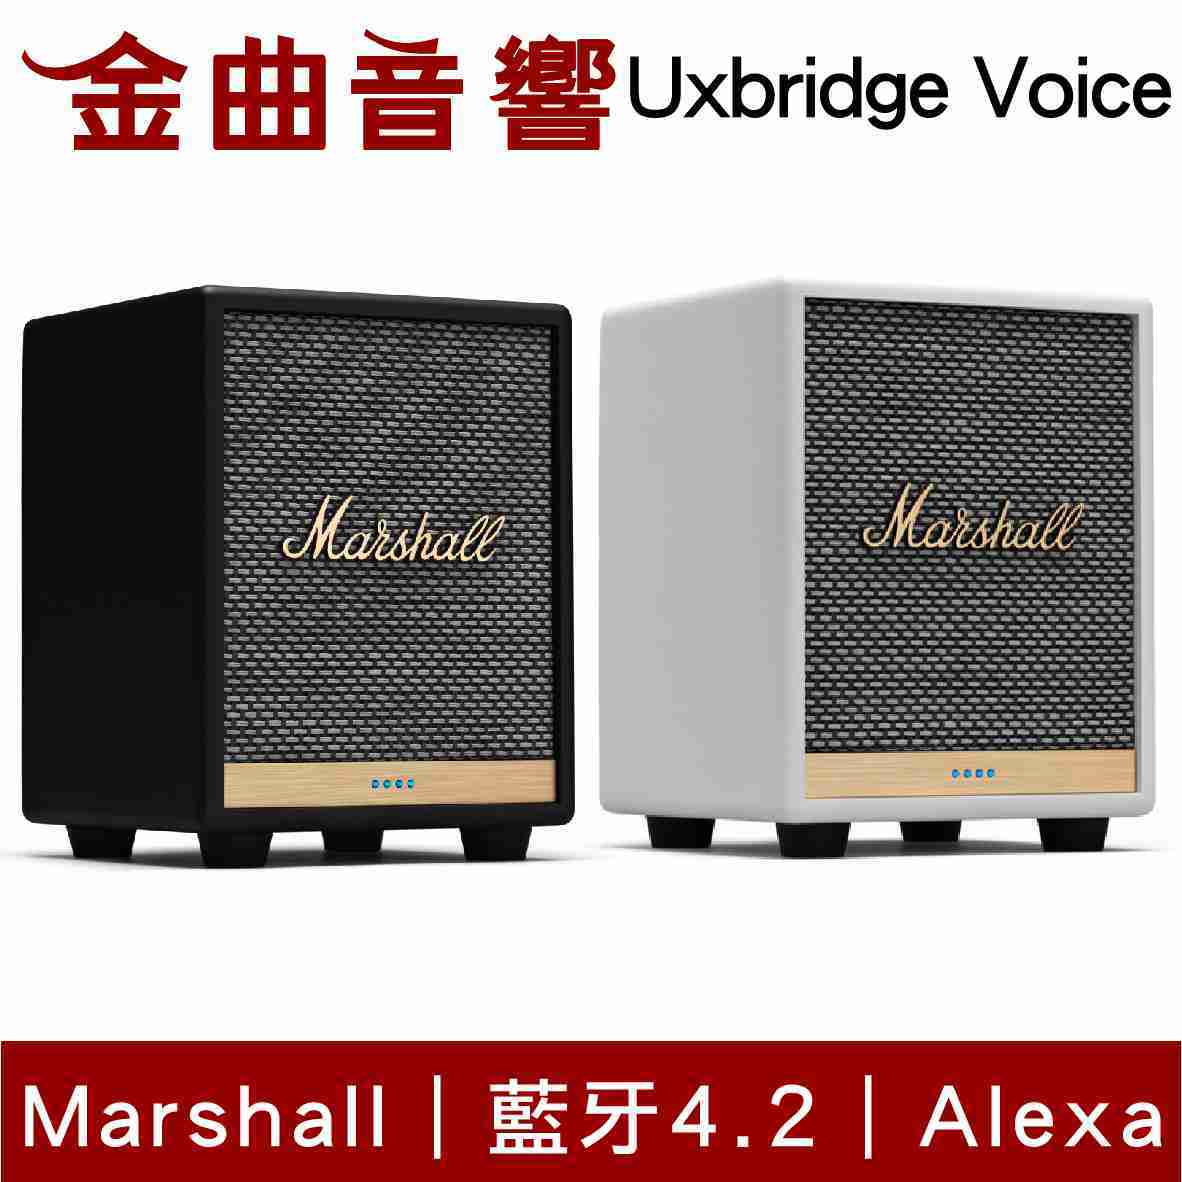 Marshall 馬歇爾 Uxbridge Voice 雙麥克風 藍芽 無線 喇叭 | 金曲音響